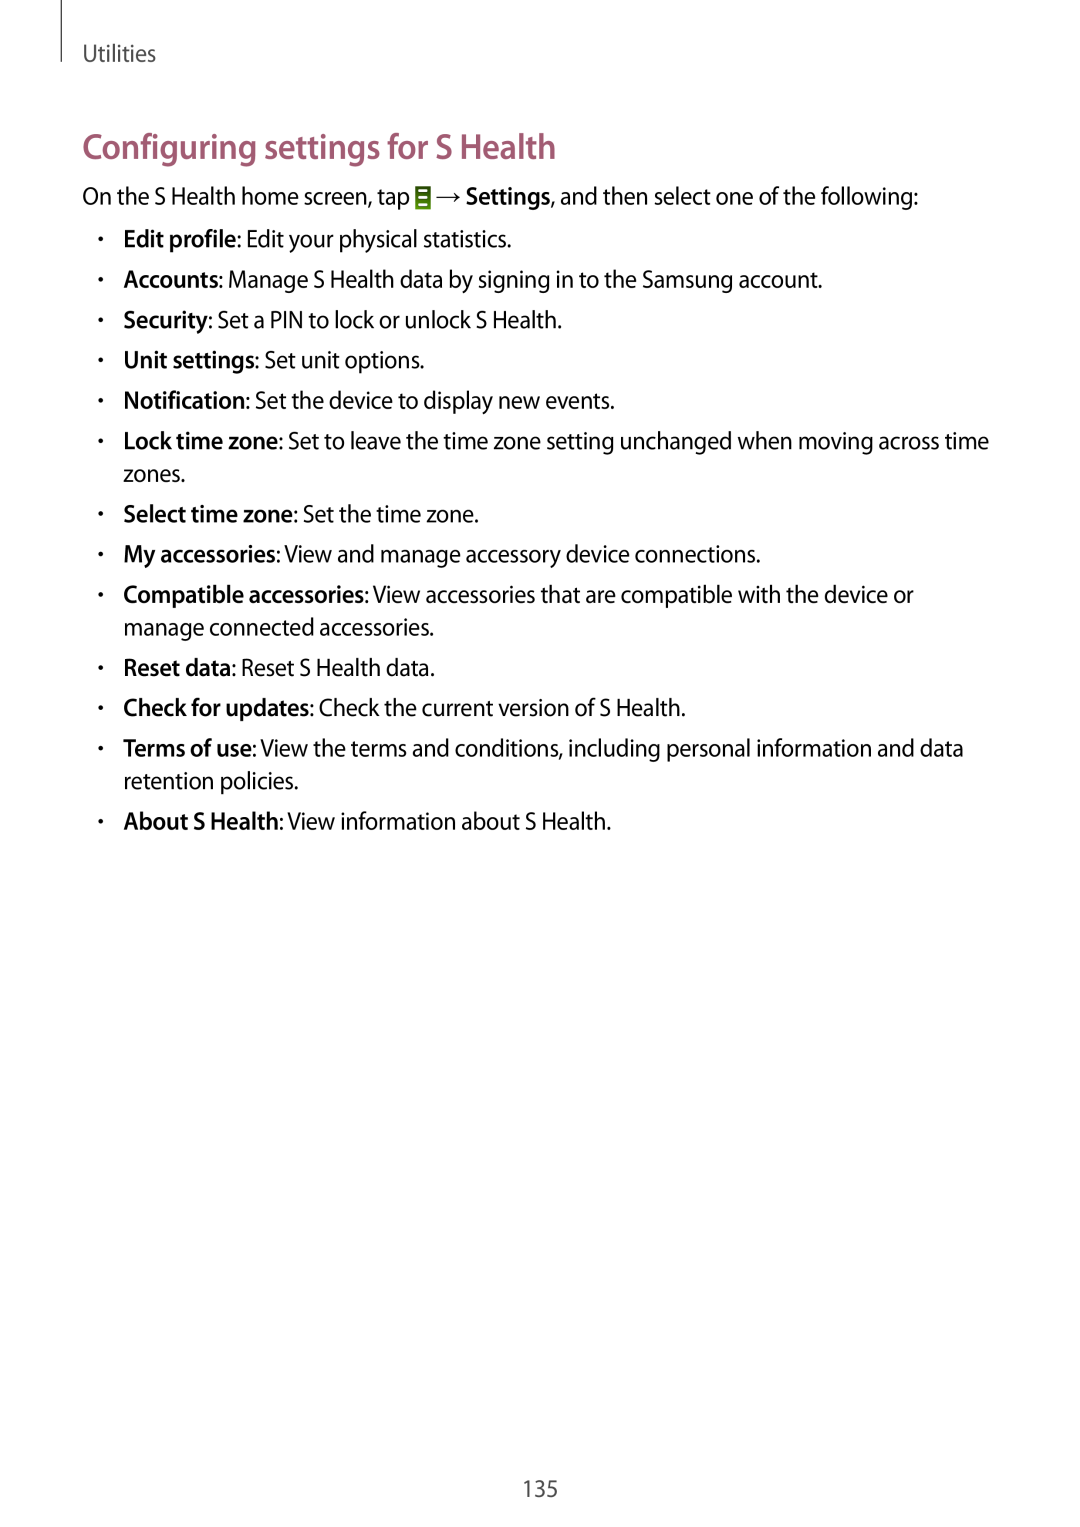 Samsung SM-N9005ZREKSA, SM-N9005ZKEEGY, SM-N9005ZIEEGY, SM-N9005ZIEKSA manual Configuring settings for S Health, Utilities 